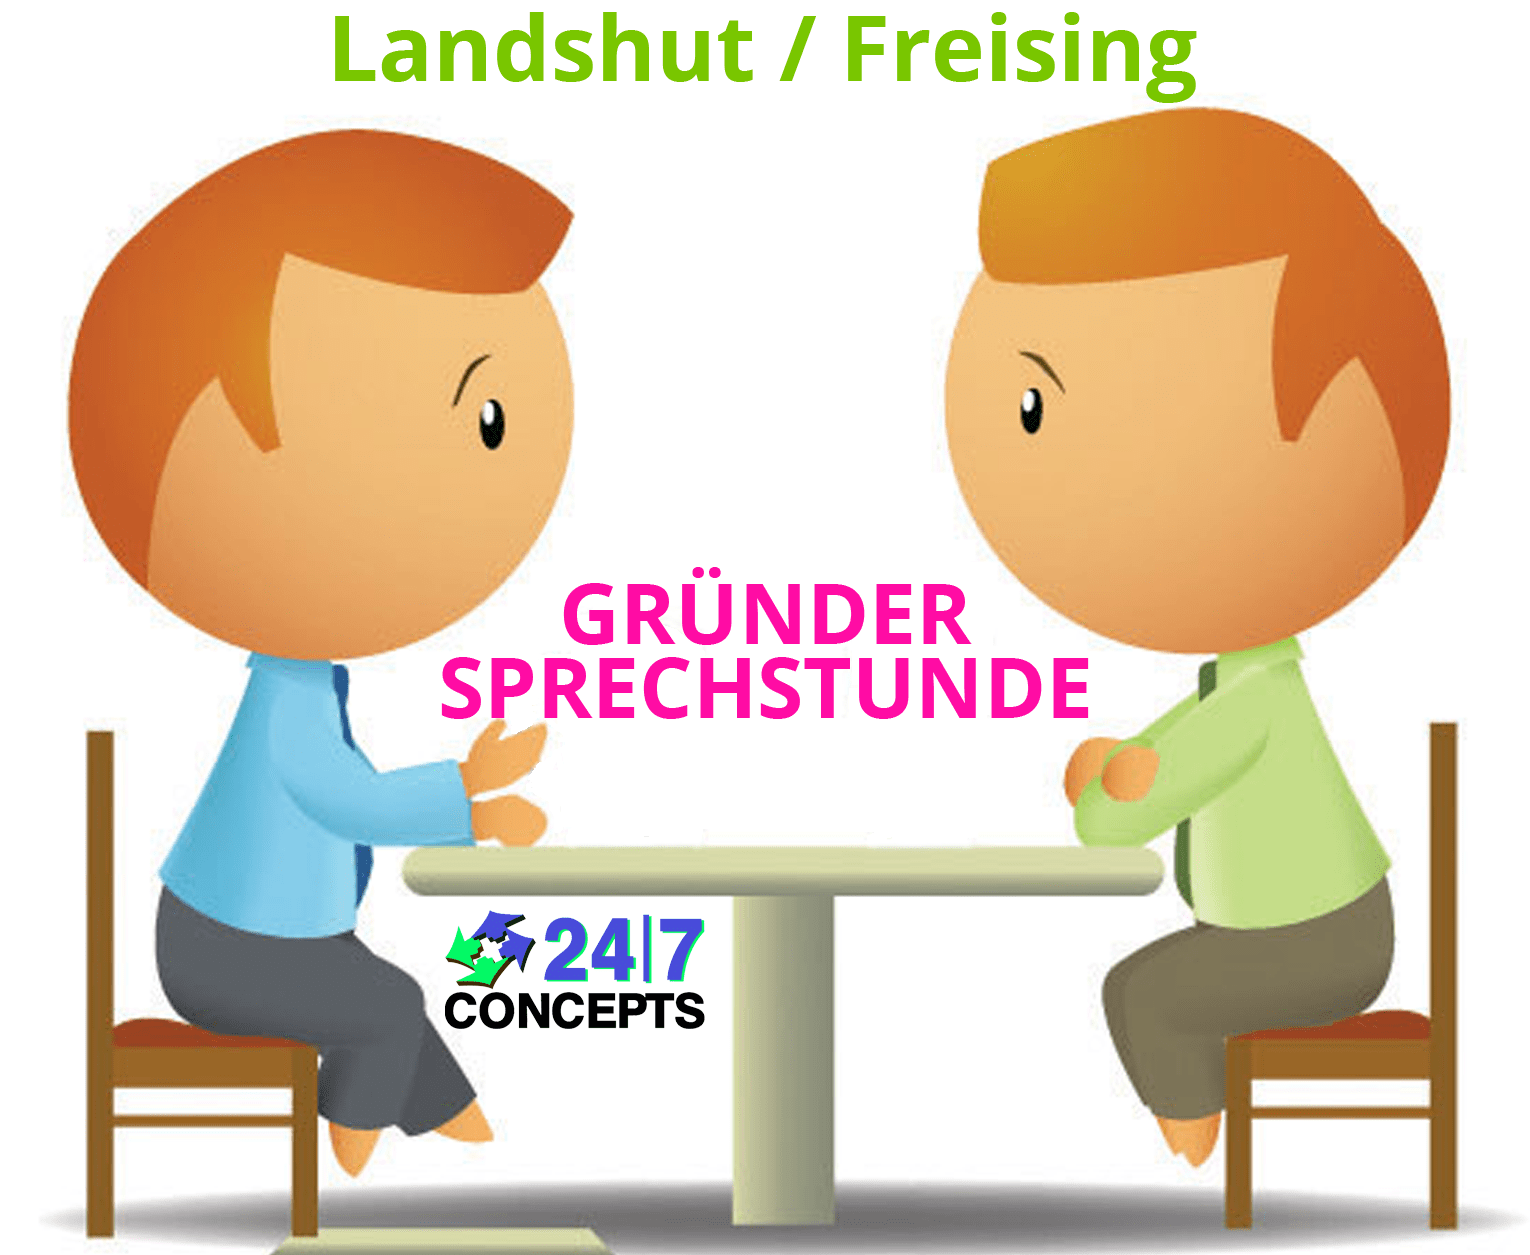 24/7 Concepts-gruendersprechstunde-landshut